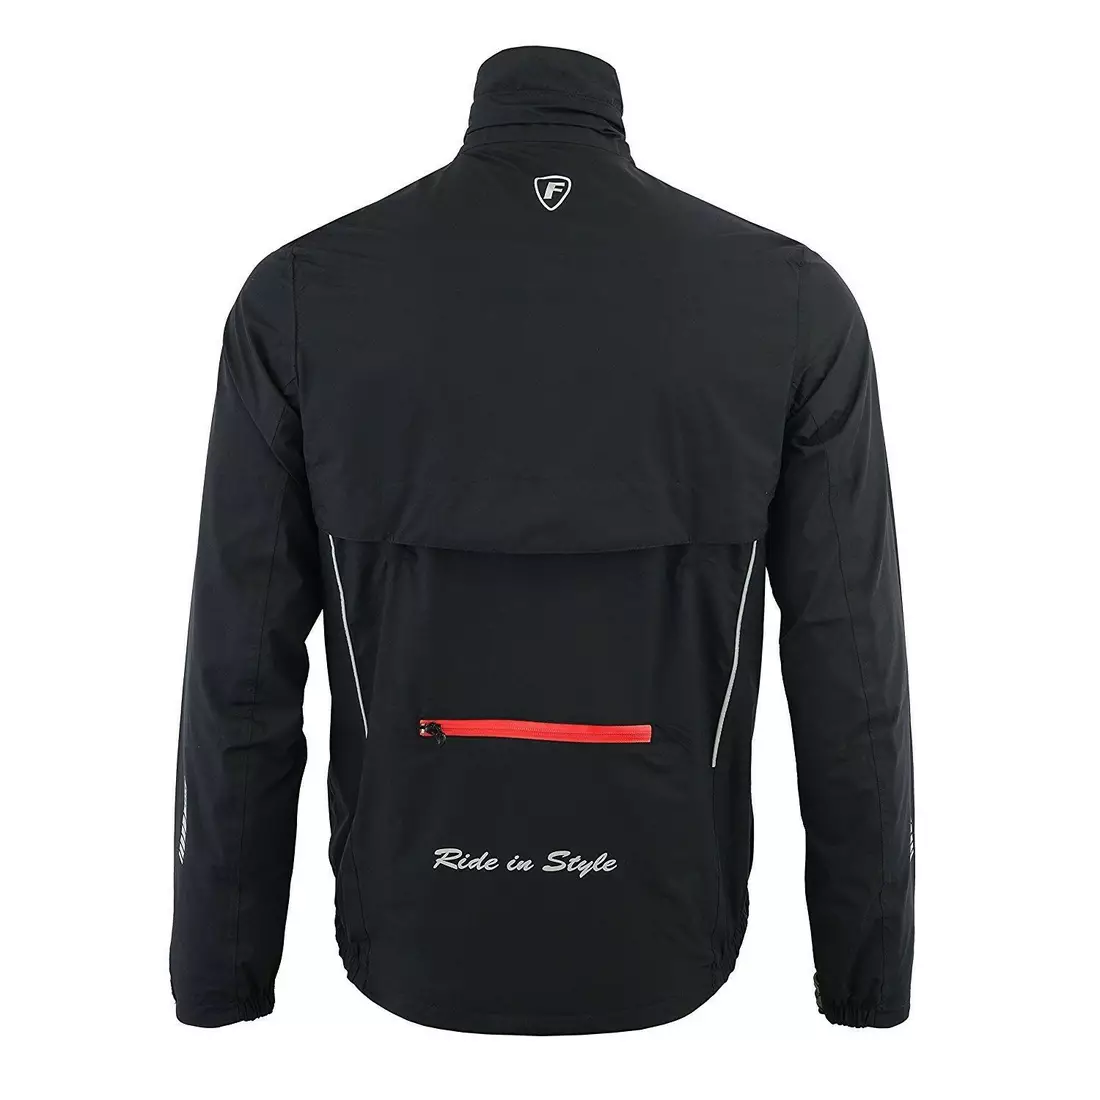 FDX 1410 férfi kerékpáros esőkabát, fekete piros